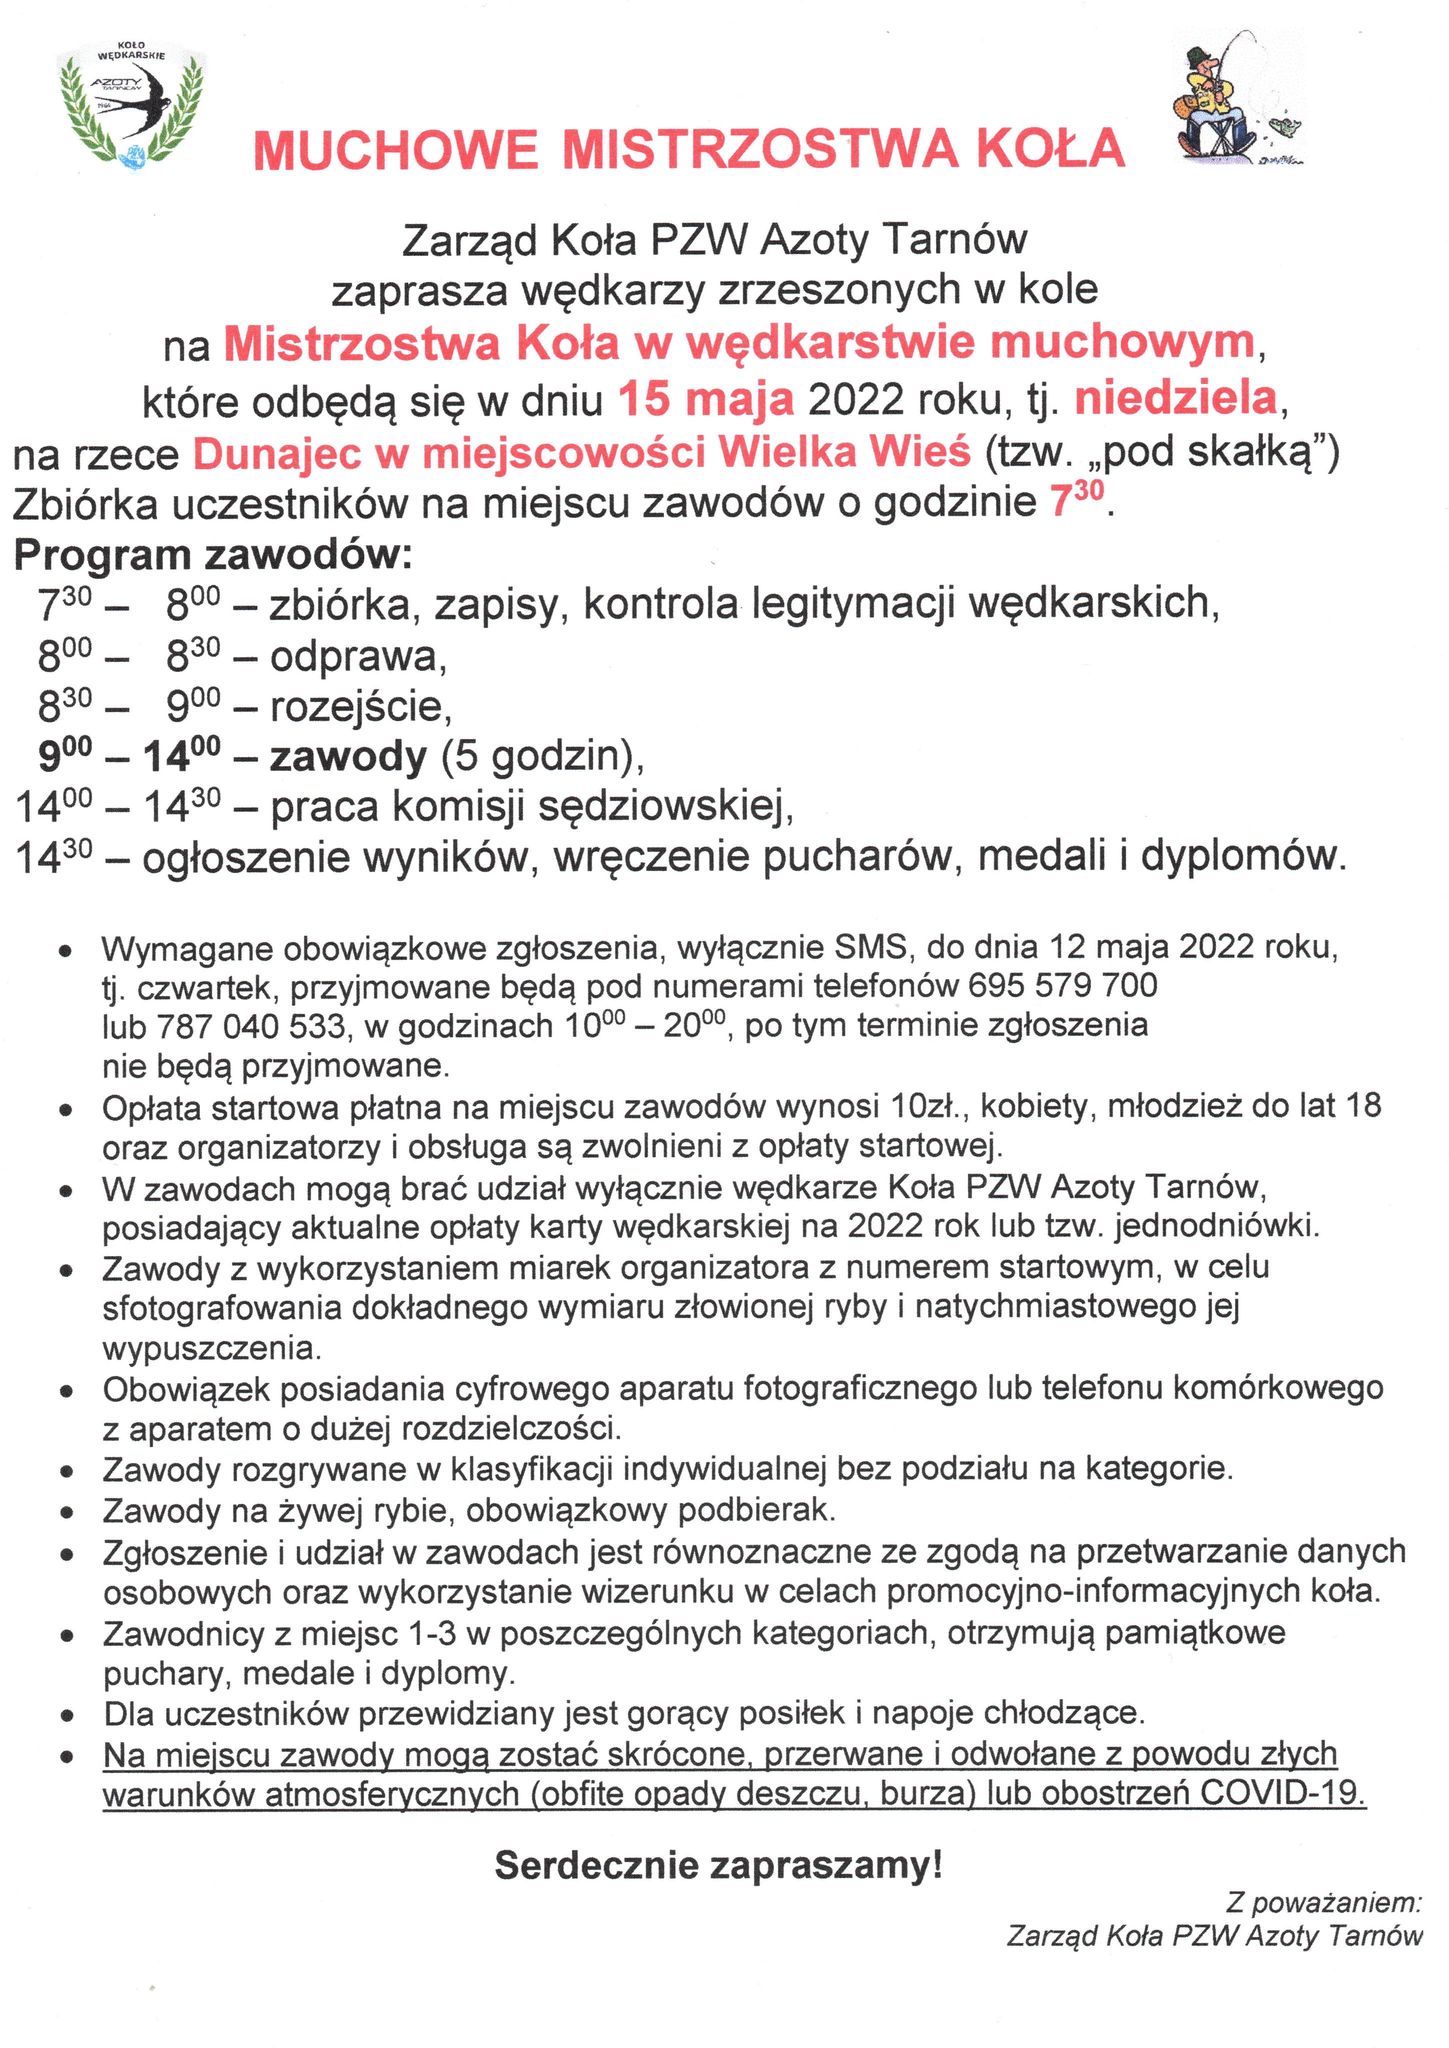 muchowe-zaproszenie-15-05-2022.jpg